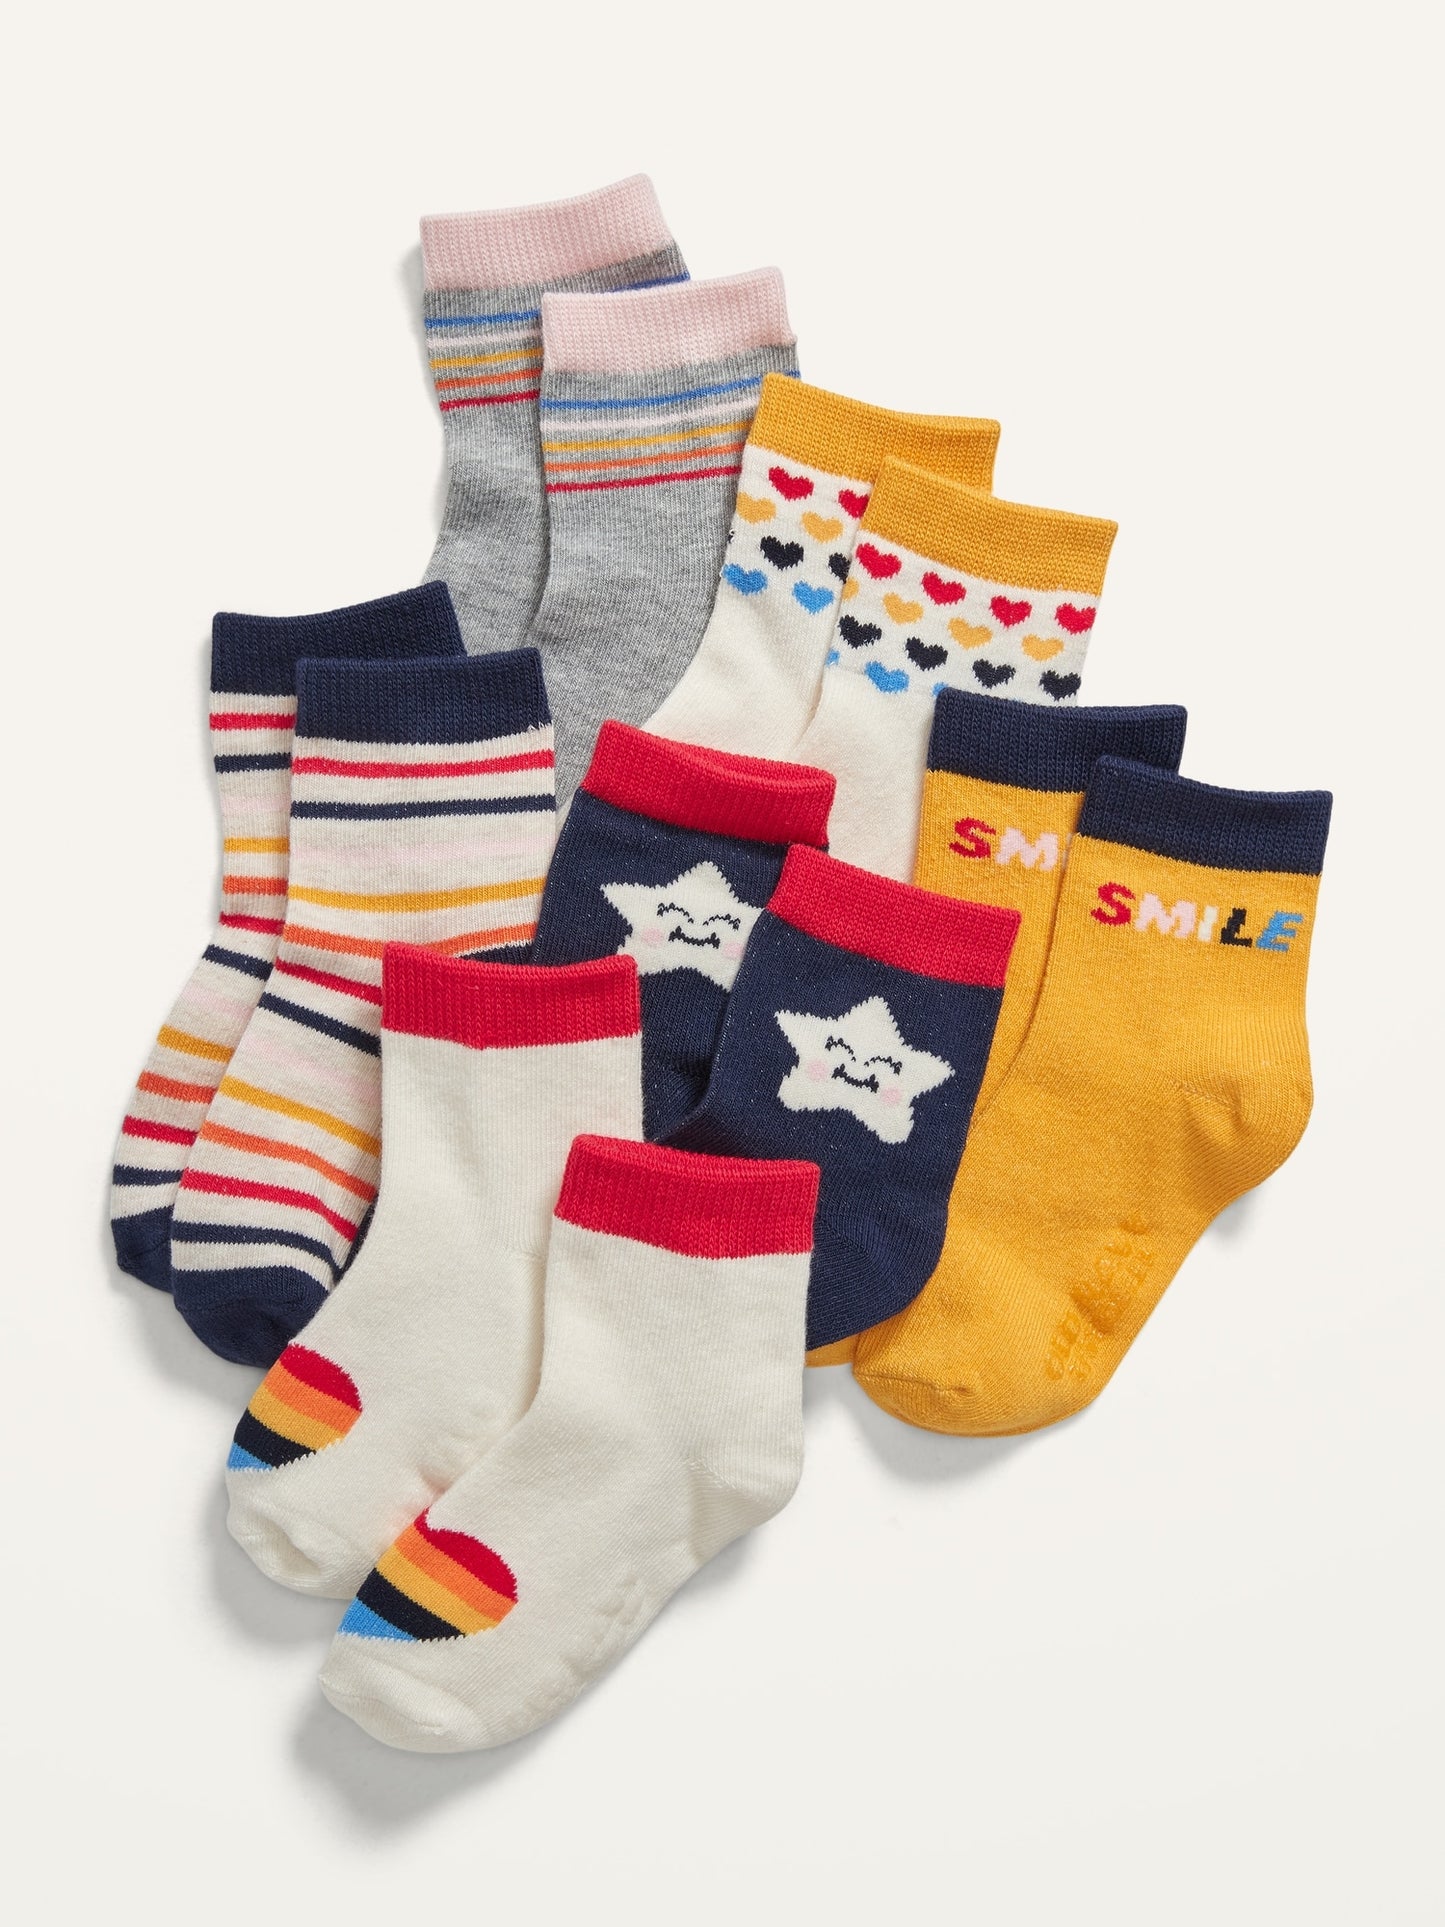 ON Unisex Crew Socks 6-Pack For Toddler & Baby - Stars, Stripes & Smiles